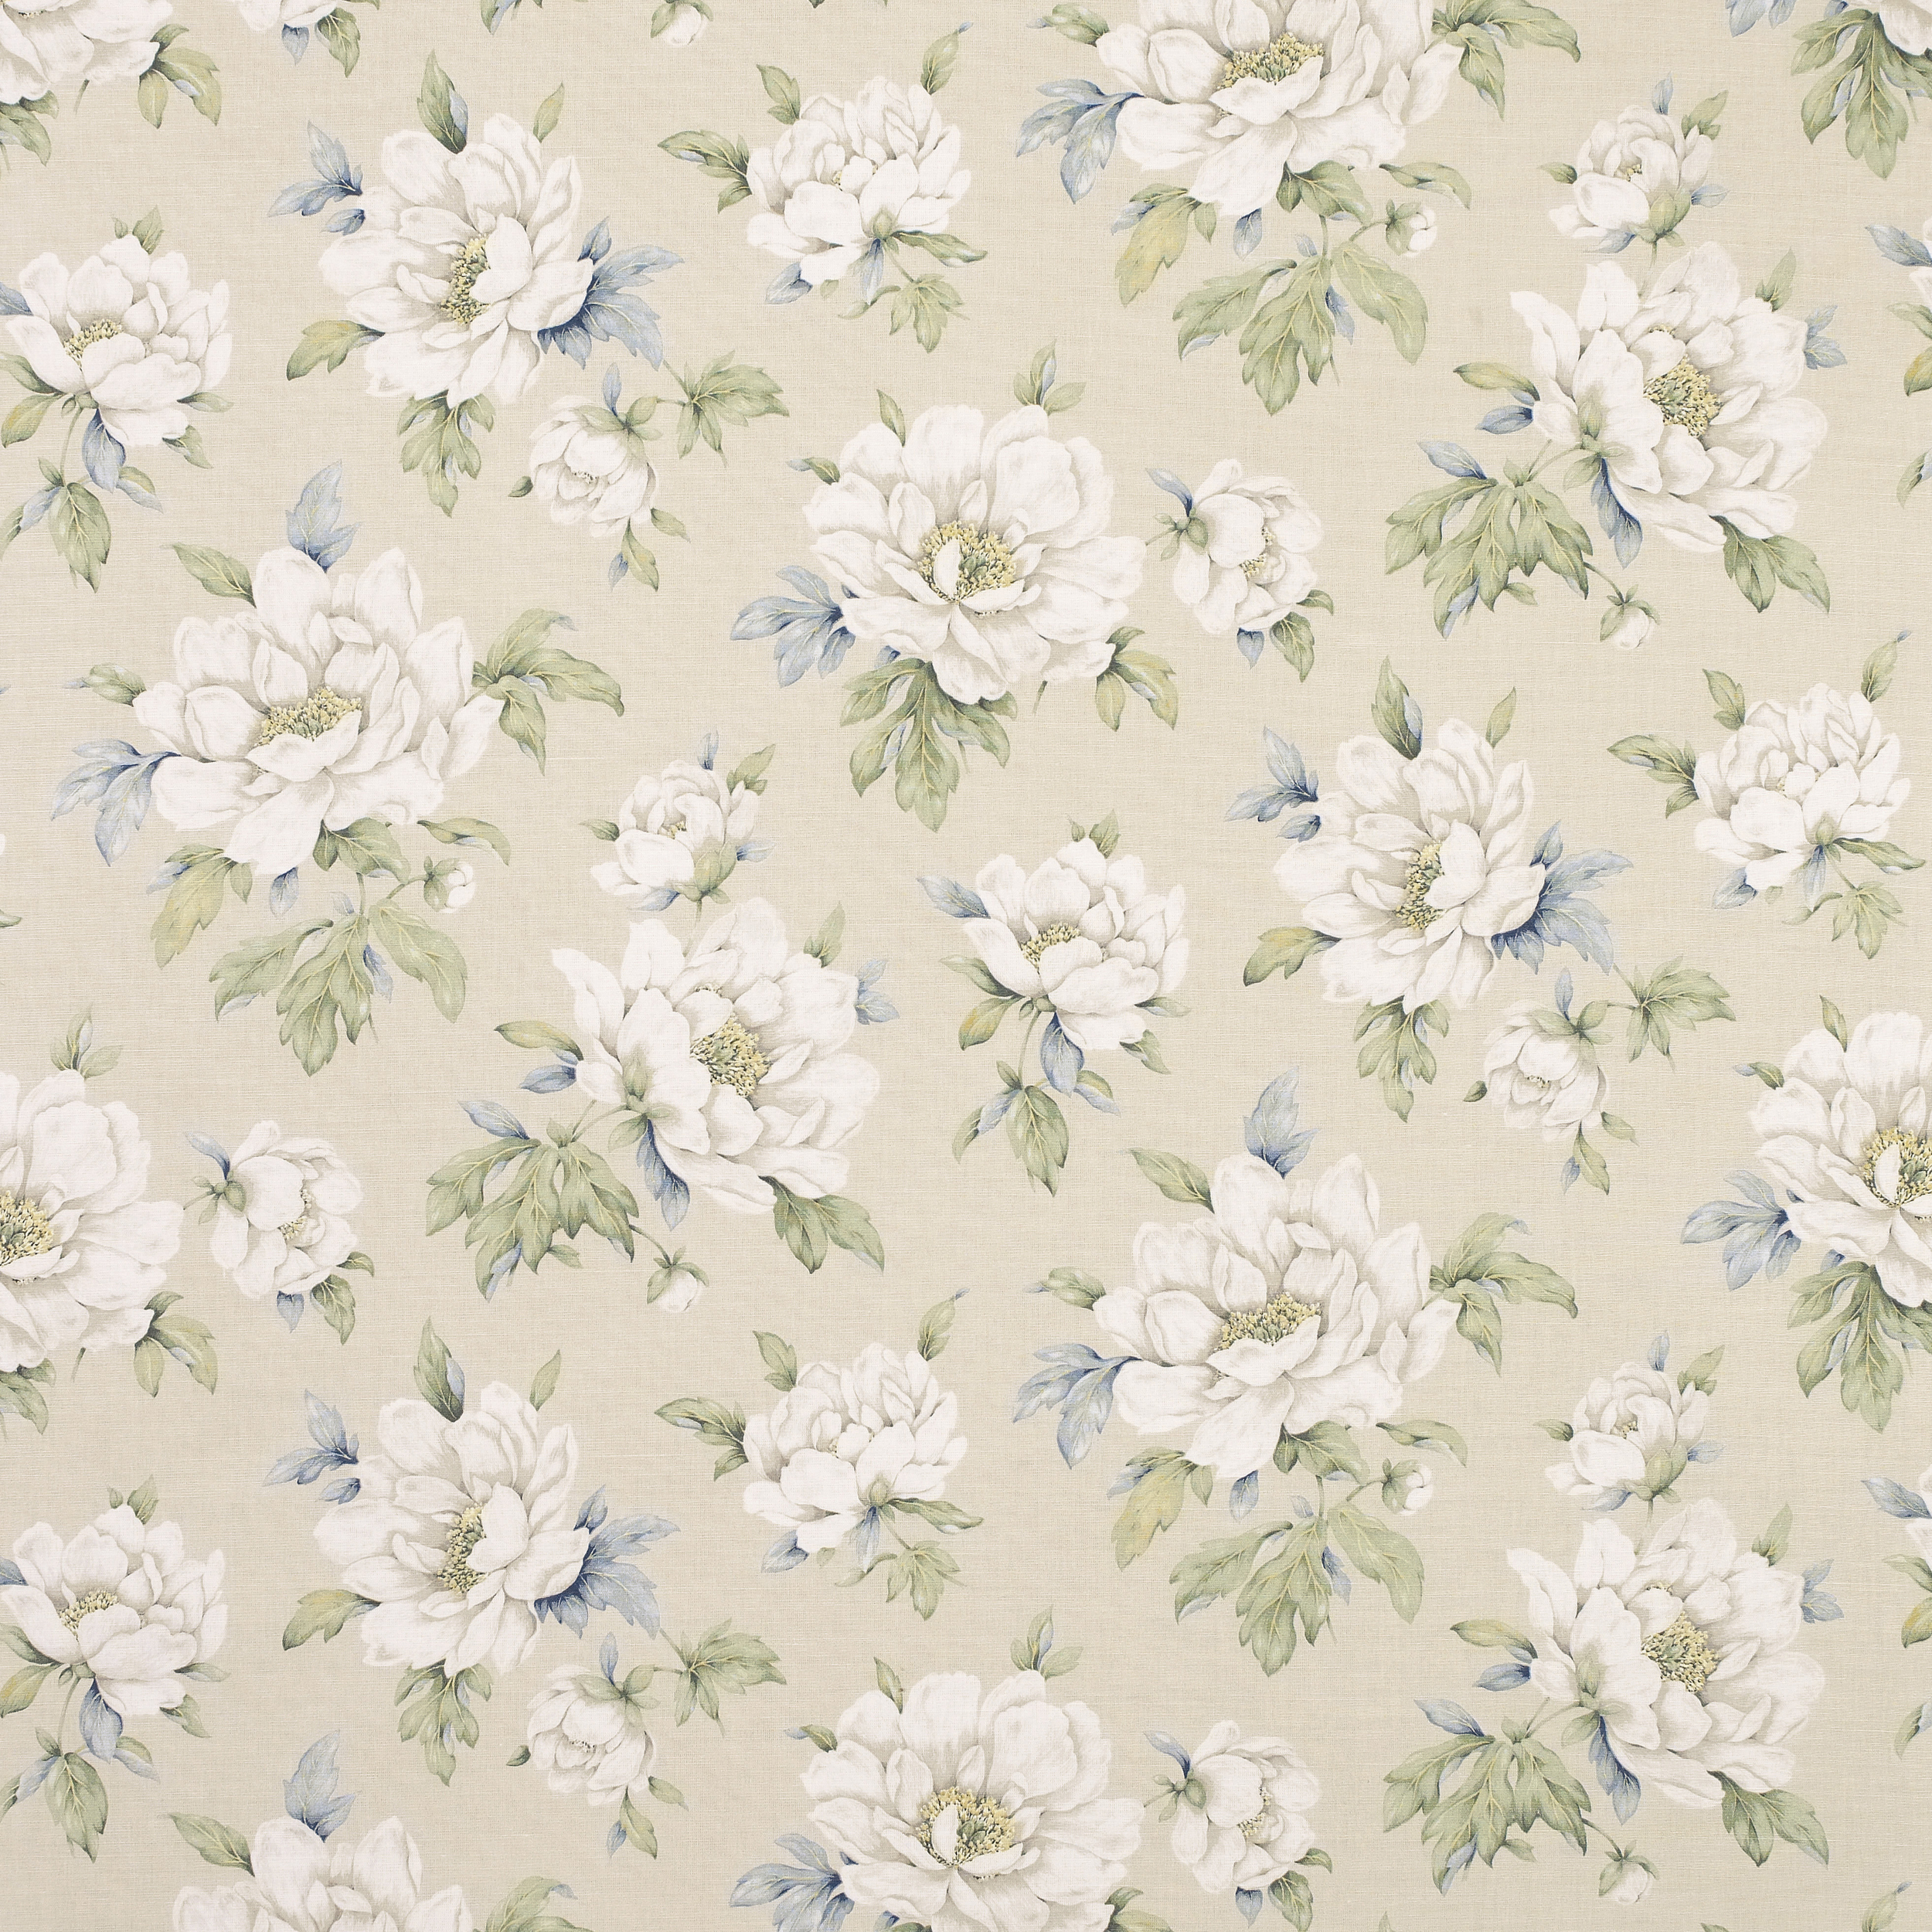 Floral Print Wallpaper Grasscloth